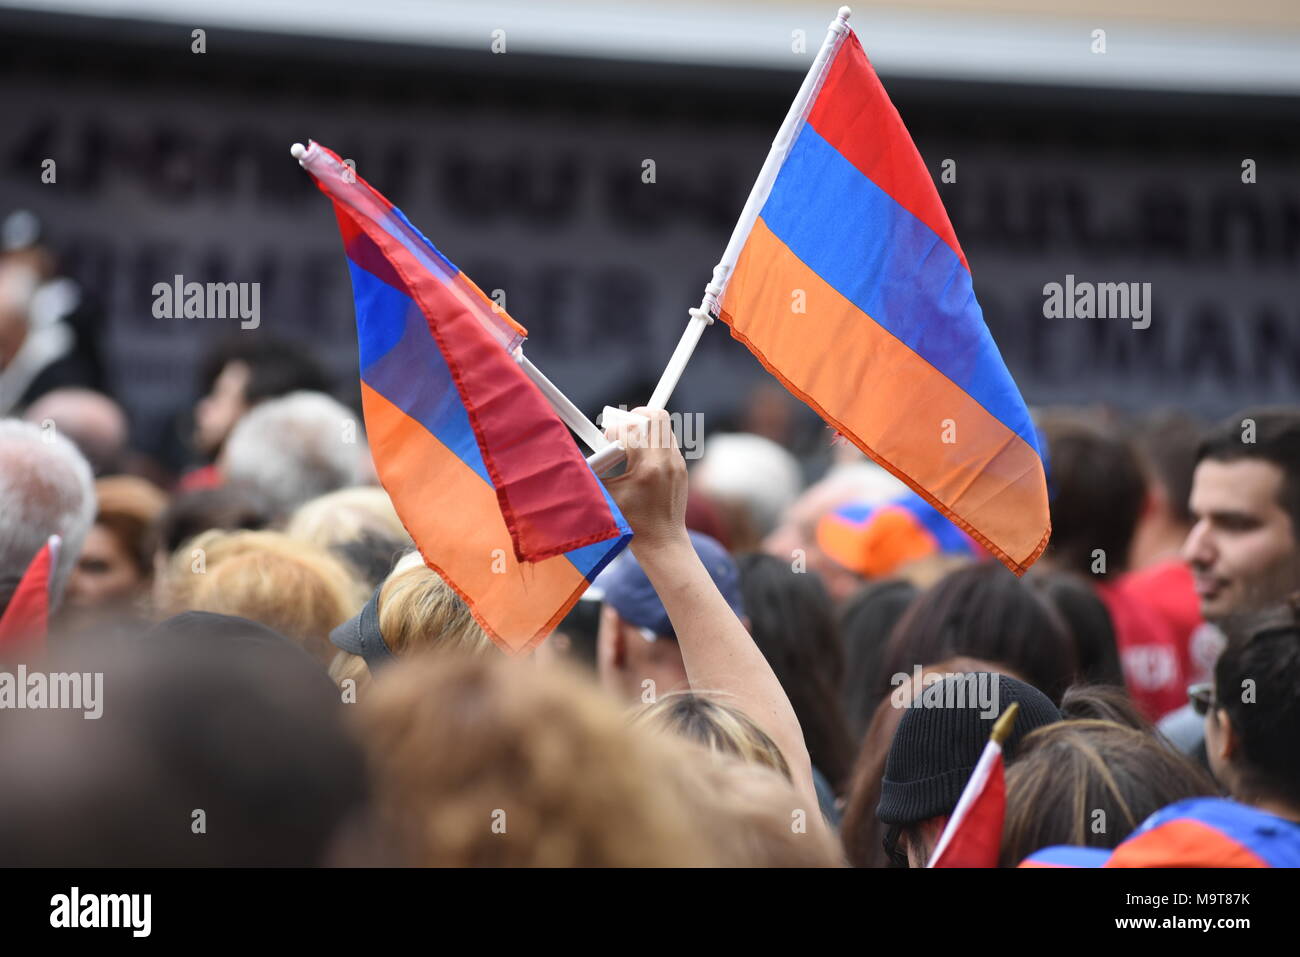 LOS ANGELES - 24. April: armenische Gemeinschaft März. Tausende Menschen demonstrierten in Los Angeles zum Jahrestag des Genozids an den Armeniern 1915 zu markieren. Stockfoto